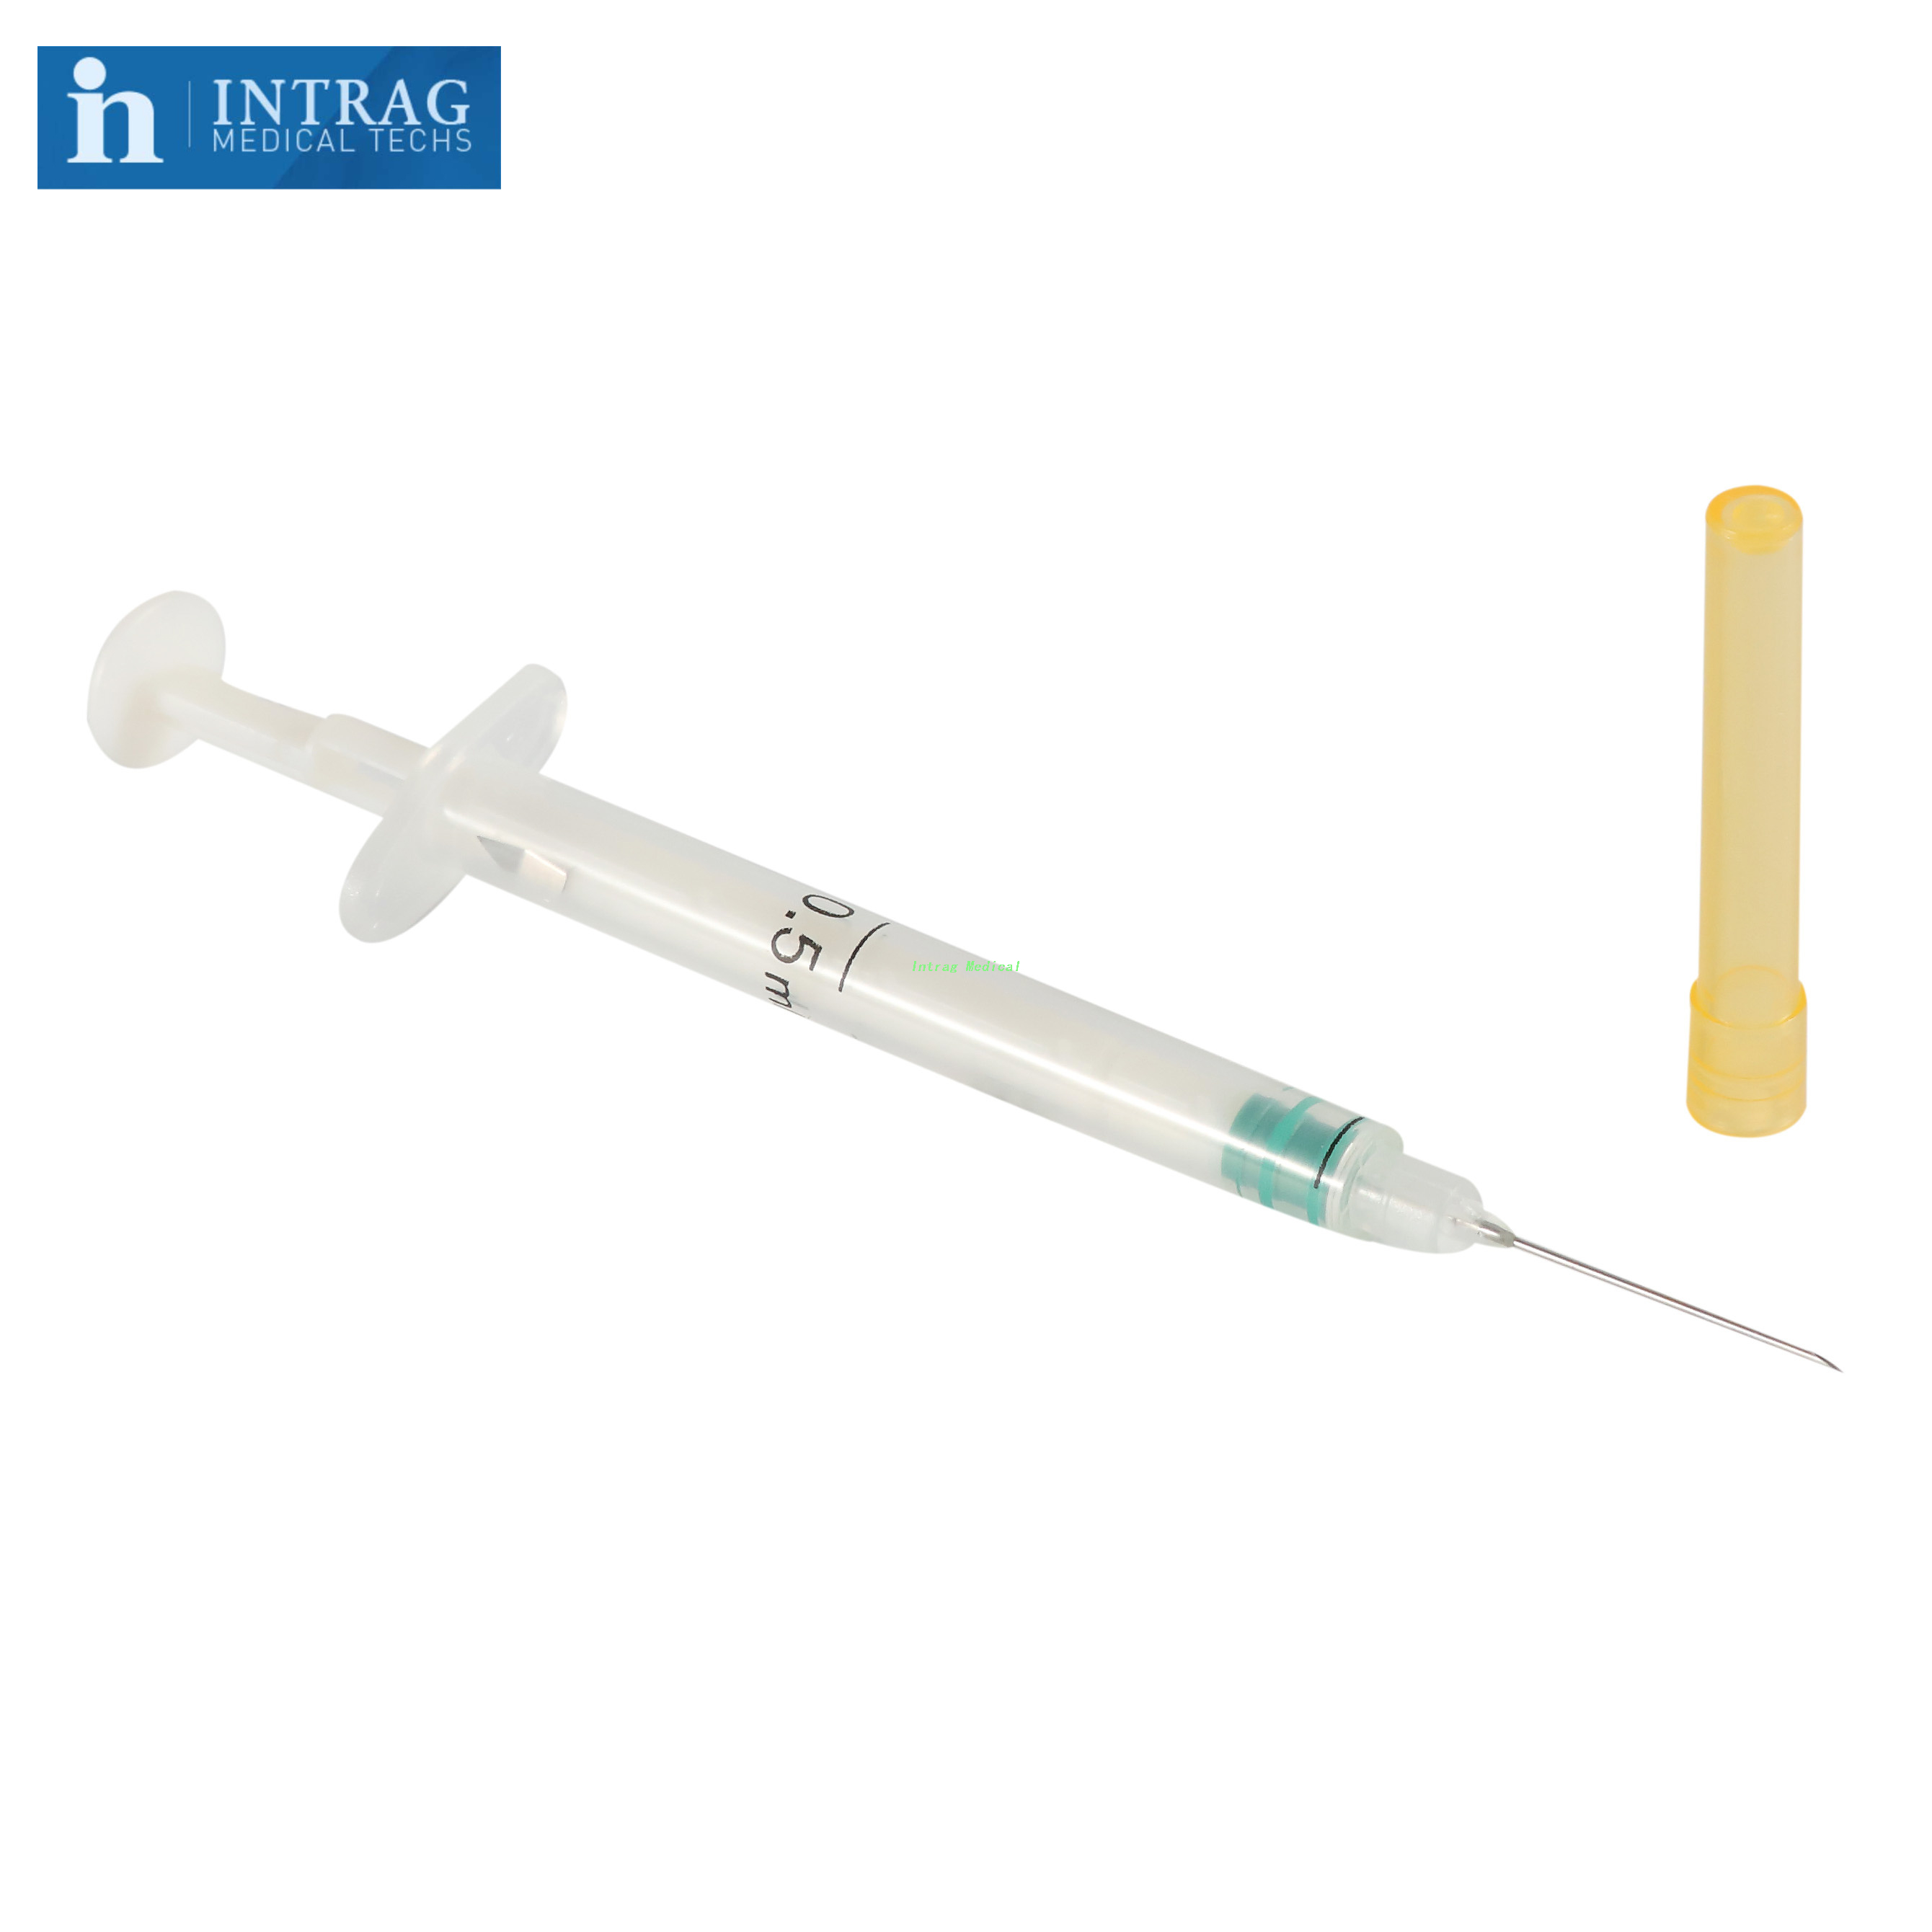 Auto Syringe With Fixed Needle